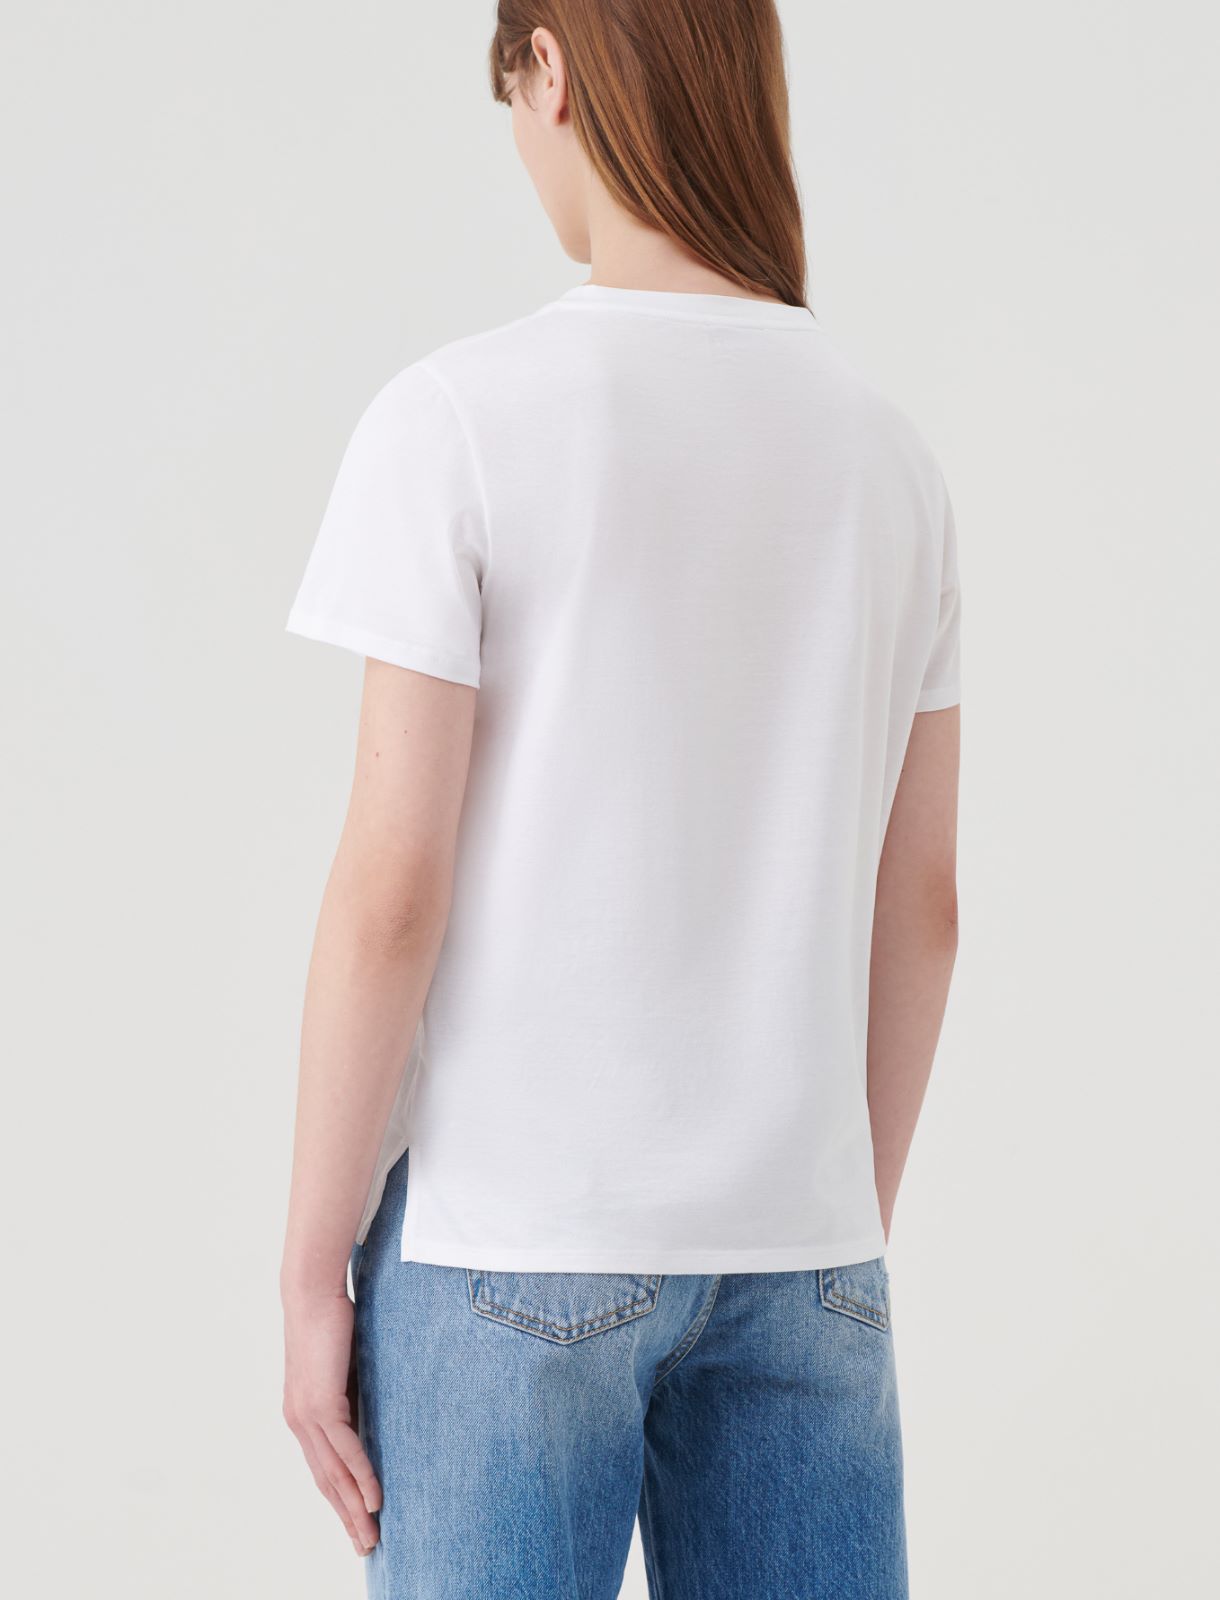 Dżersejowy t-shirt - Optyczny biały - Marella - 2